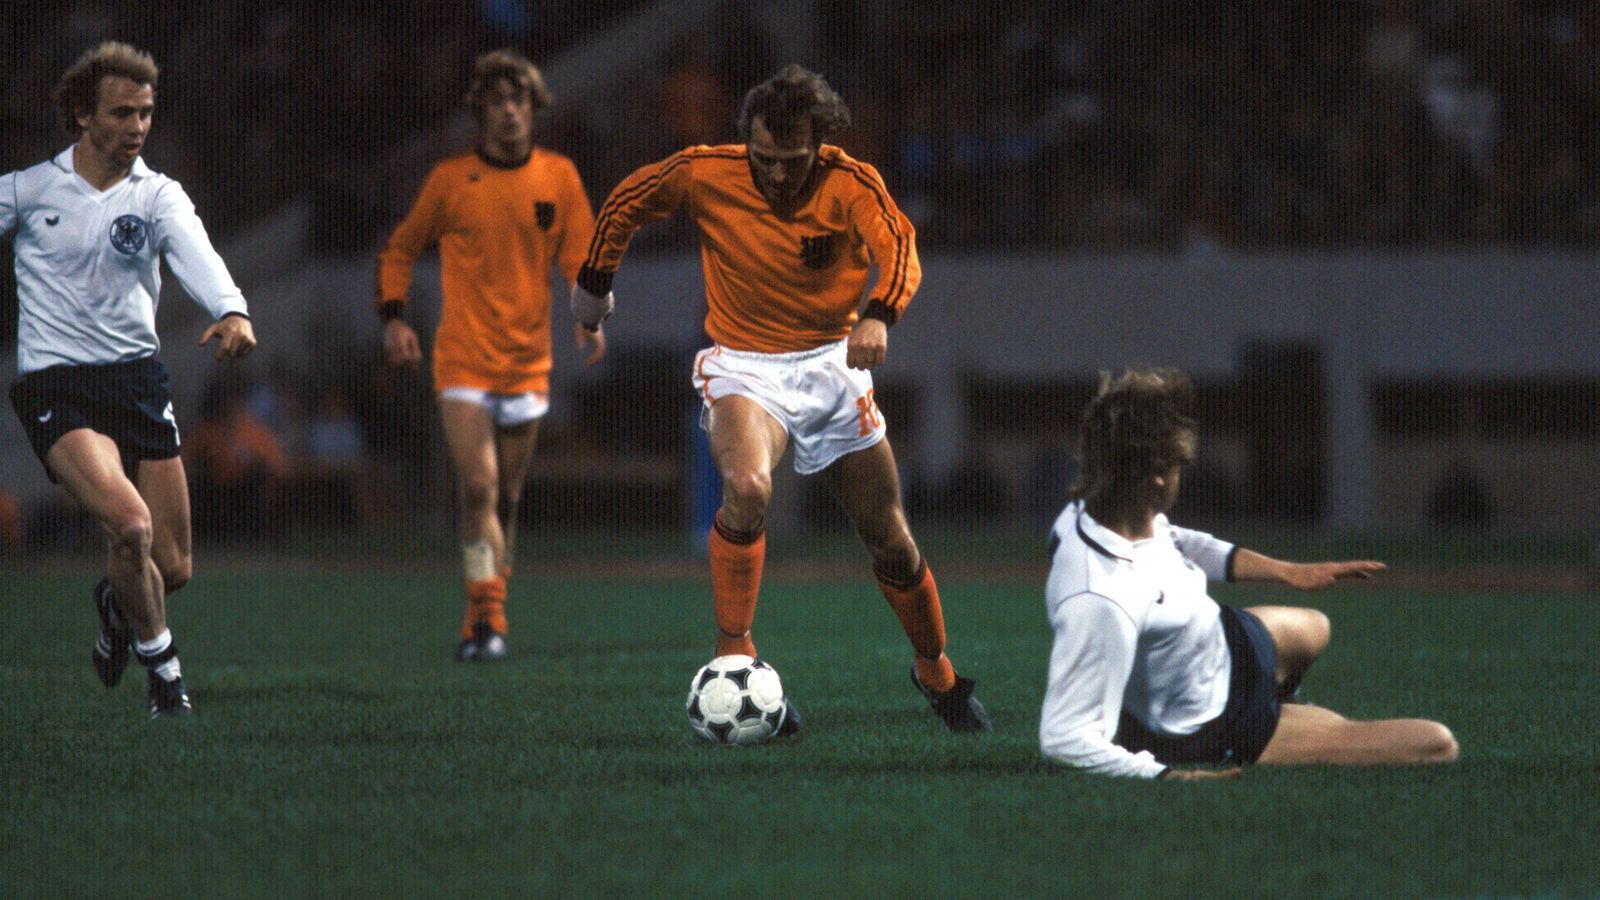 <strong>Deutschland – Niederlande 2:2 (WM 1978, 2. Finalrunde)</strong><br>
                Die Niederlande bekommt vier Jahre später die Chance zur Revanche – und nutzt sie. So halb zumindest. Denn es gelingt mit dem 2:2 zwar kein Sieg, aber Deutschland hat dadurch nur noch theoretische Chancen auf das Finale. Die zerplatzen endgültig durch die Schmach von Cordoba, dem 2:3 gegen Österreich. "Oranje" unterliegt im Endspiel Argentinien mit 1:3 nach Verlängerung.
